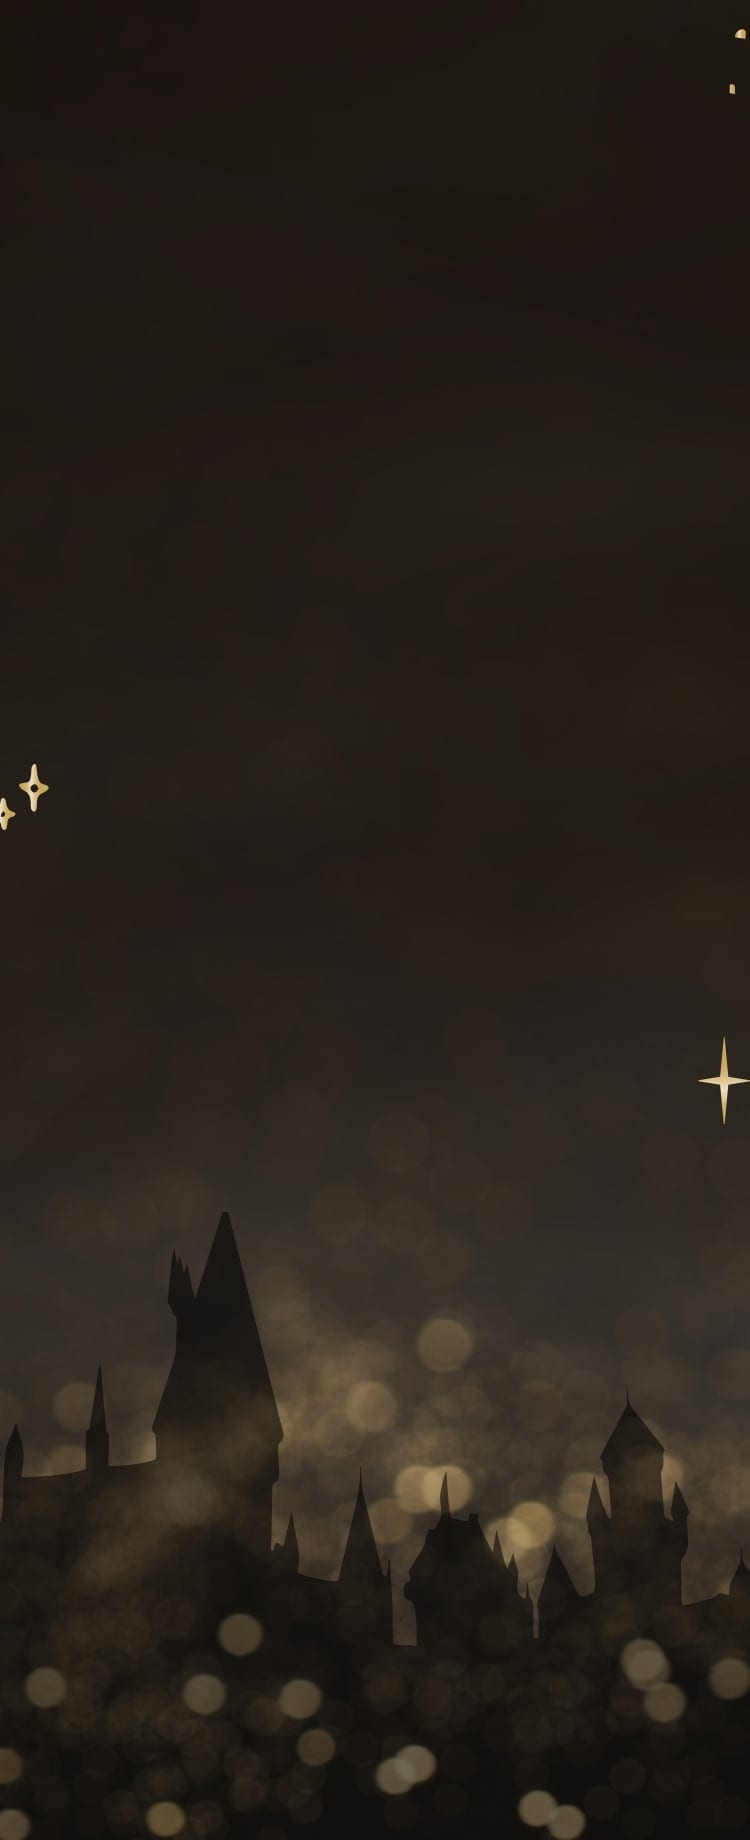 Une image de la silhouette du château de Poudlard encadré d’étoiles scintillantes.